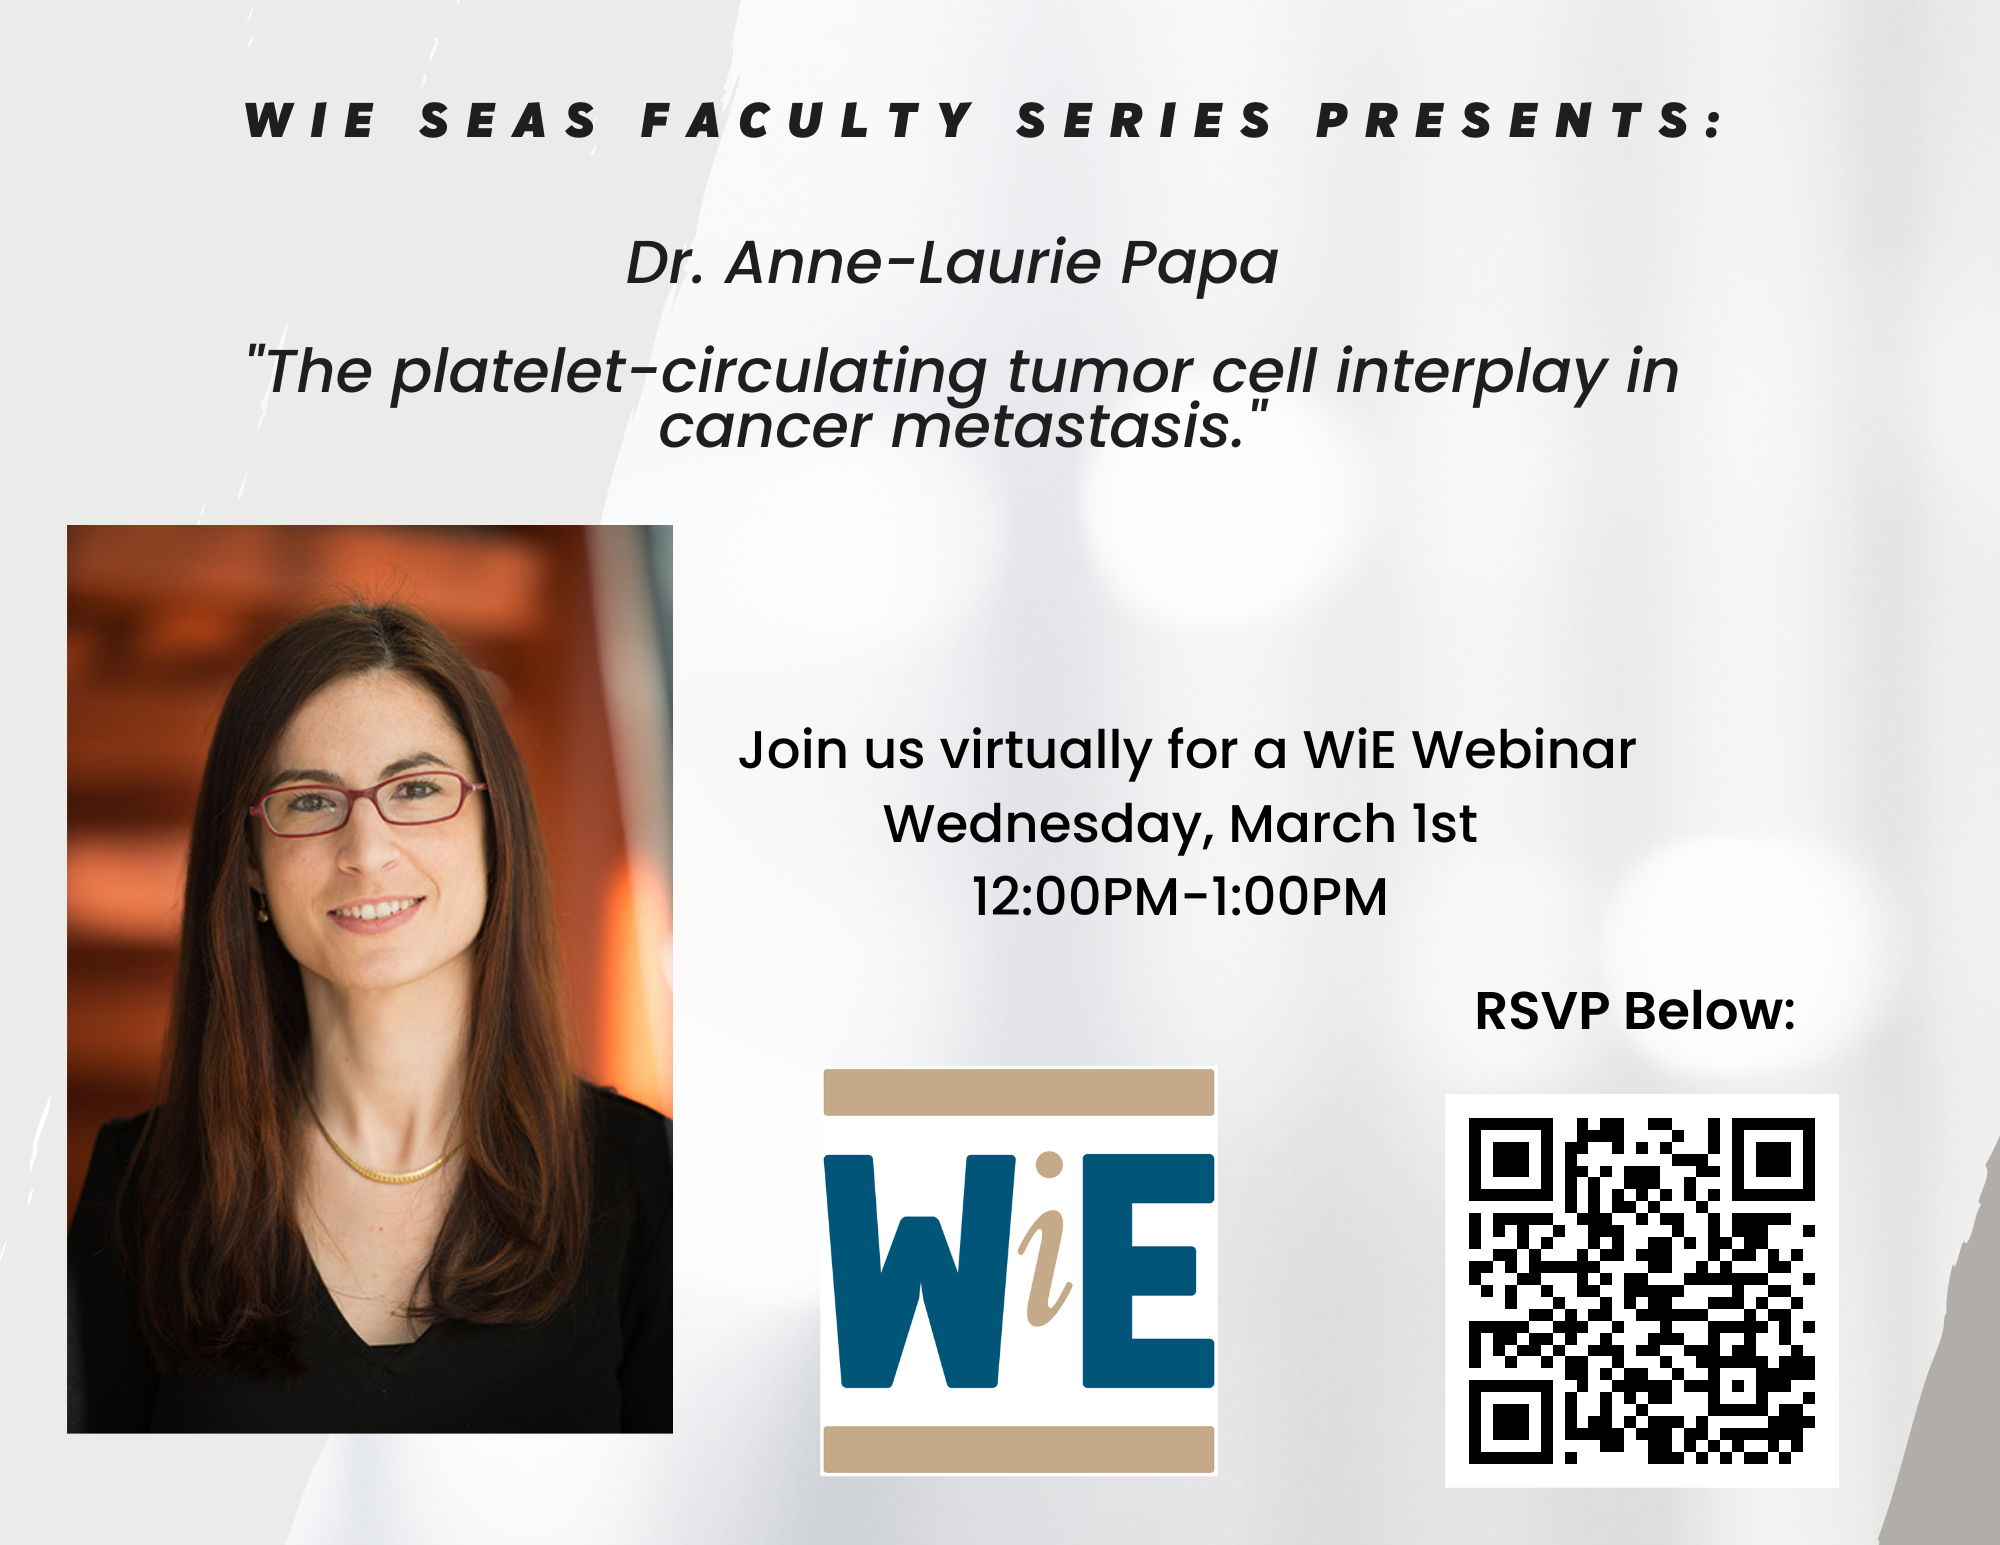 WiE SEAS Faculty Series Presents: Dr. Anne-Laure Papa